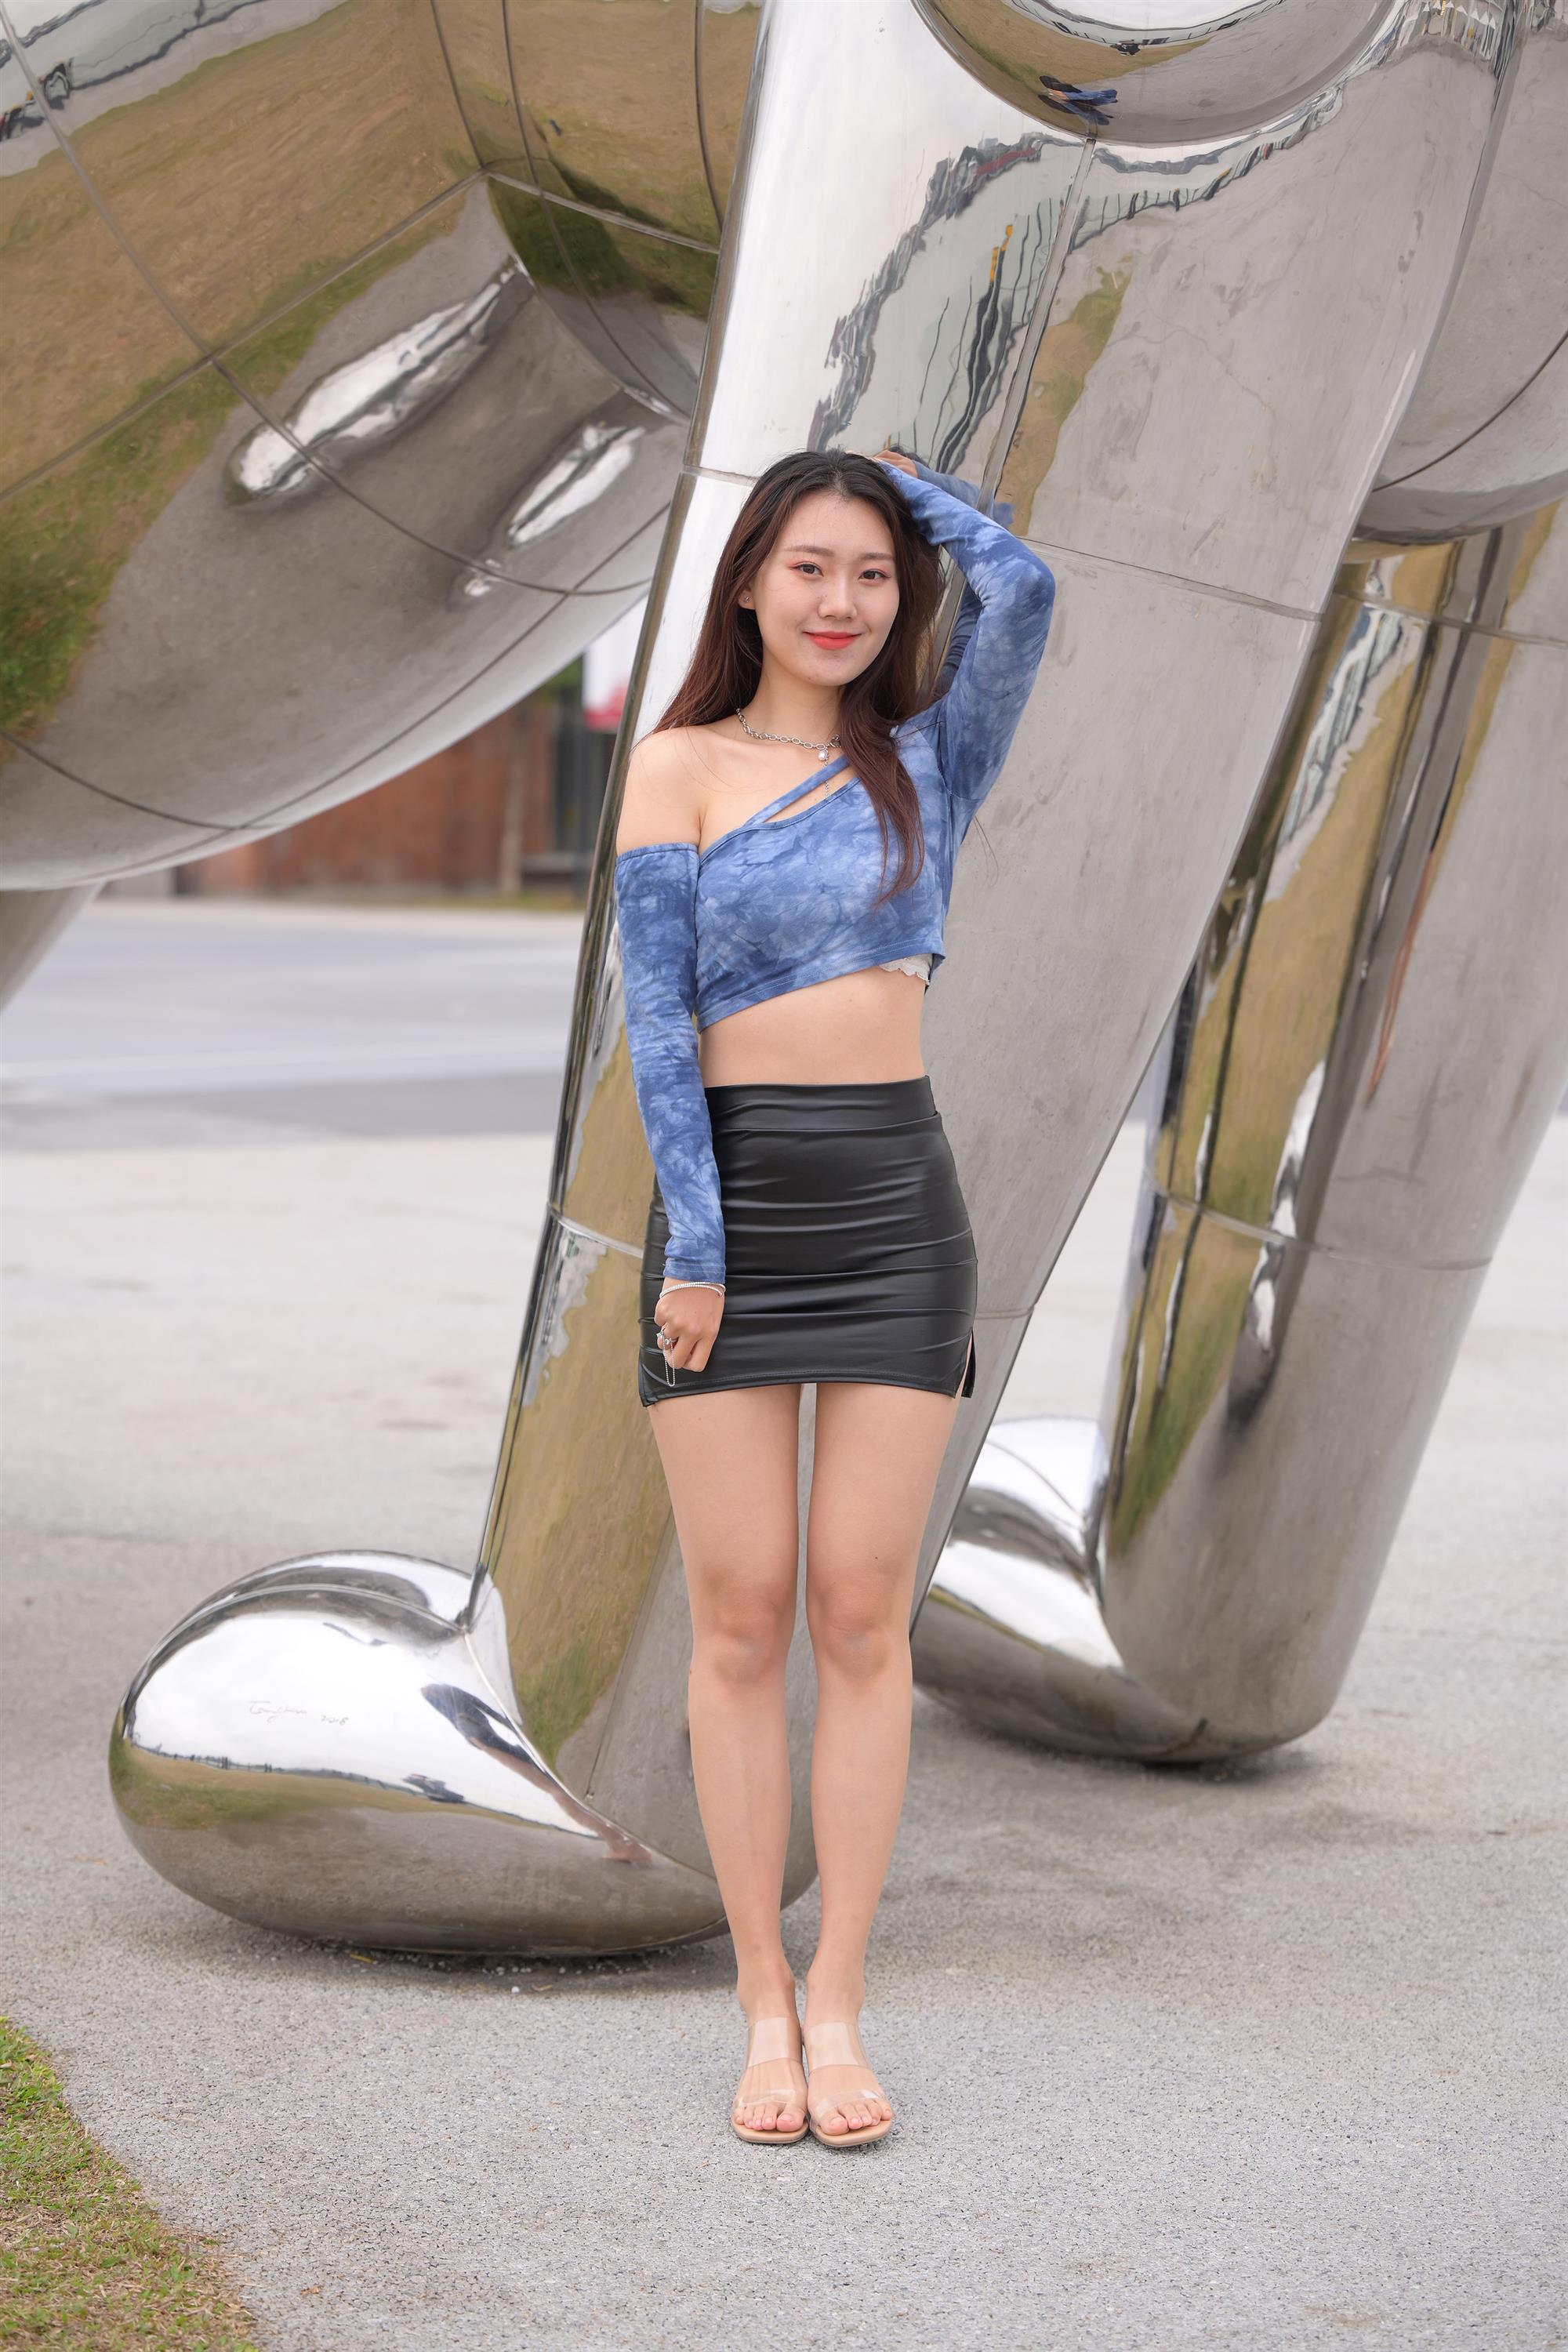 Street tube top dress miniskirt - 240.jpg